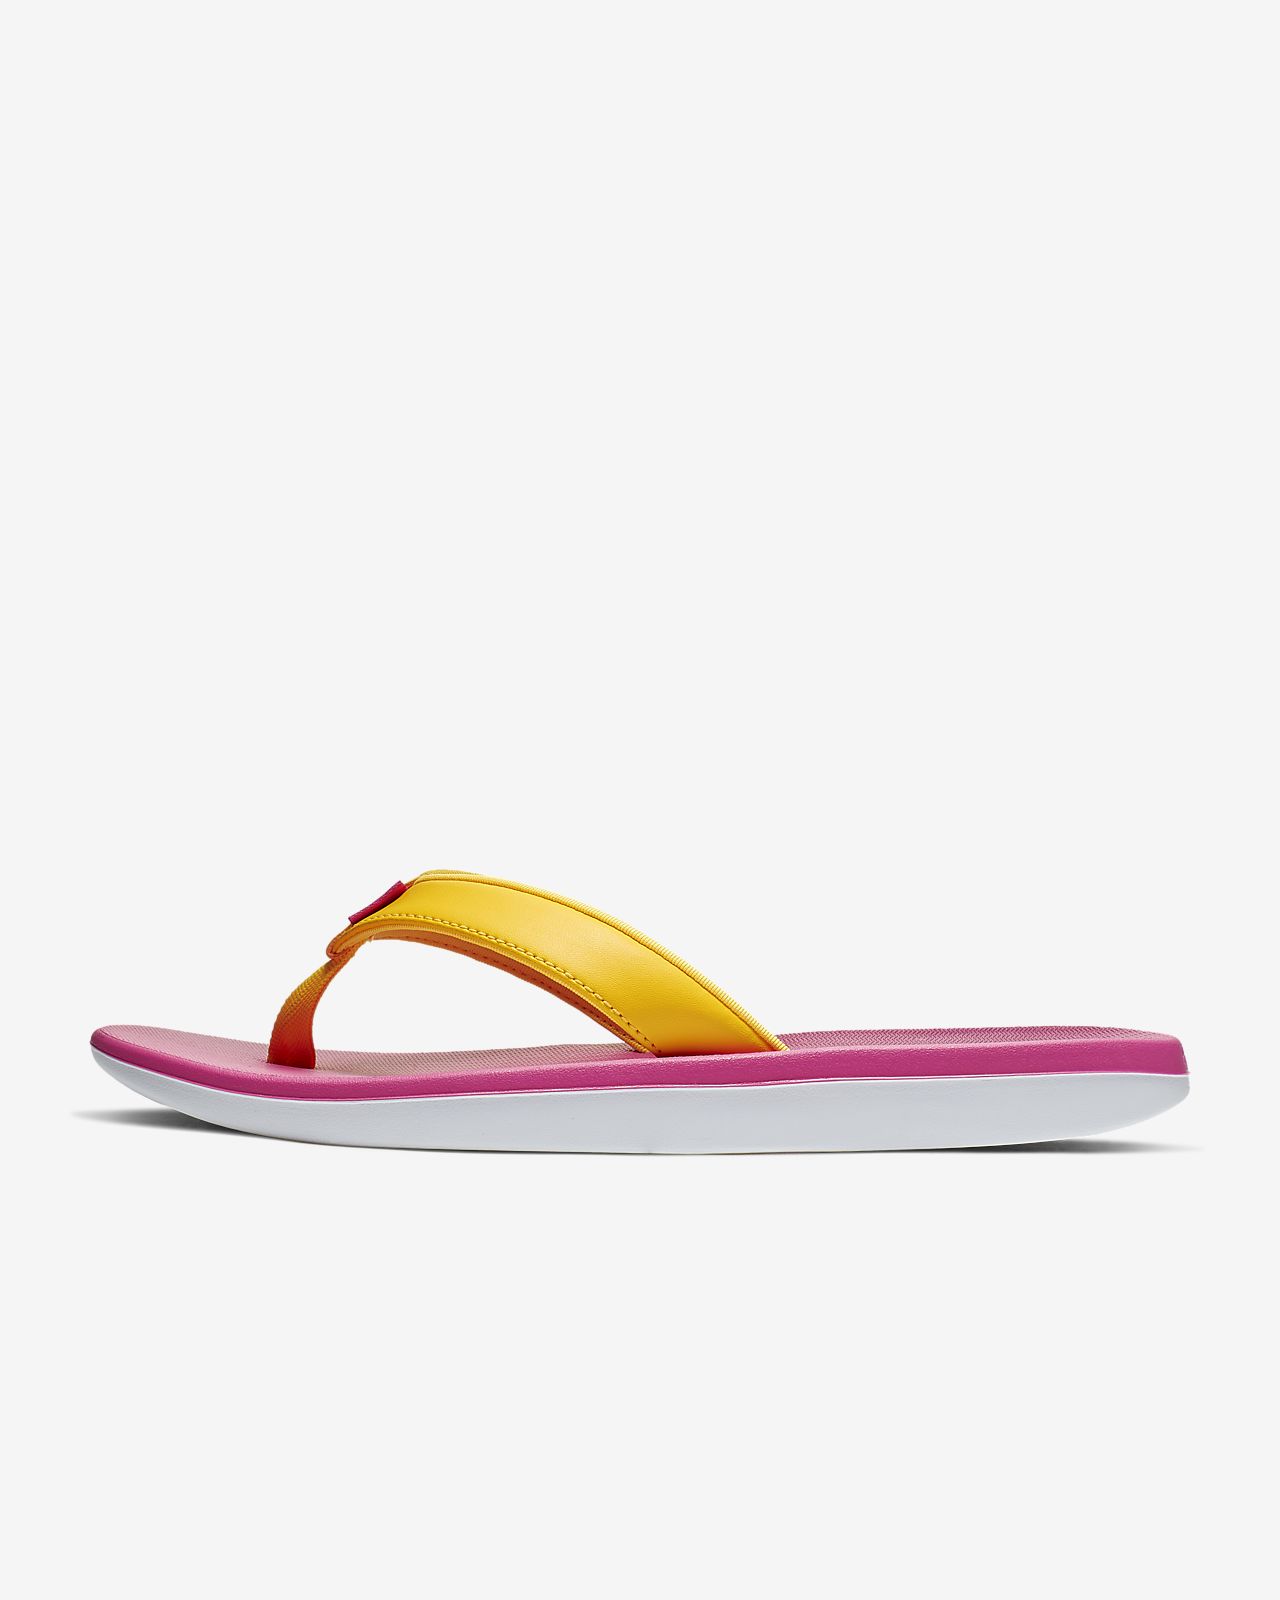 nike women's bella kai flip flop sandal